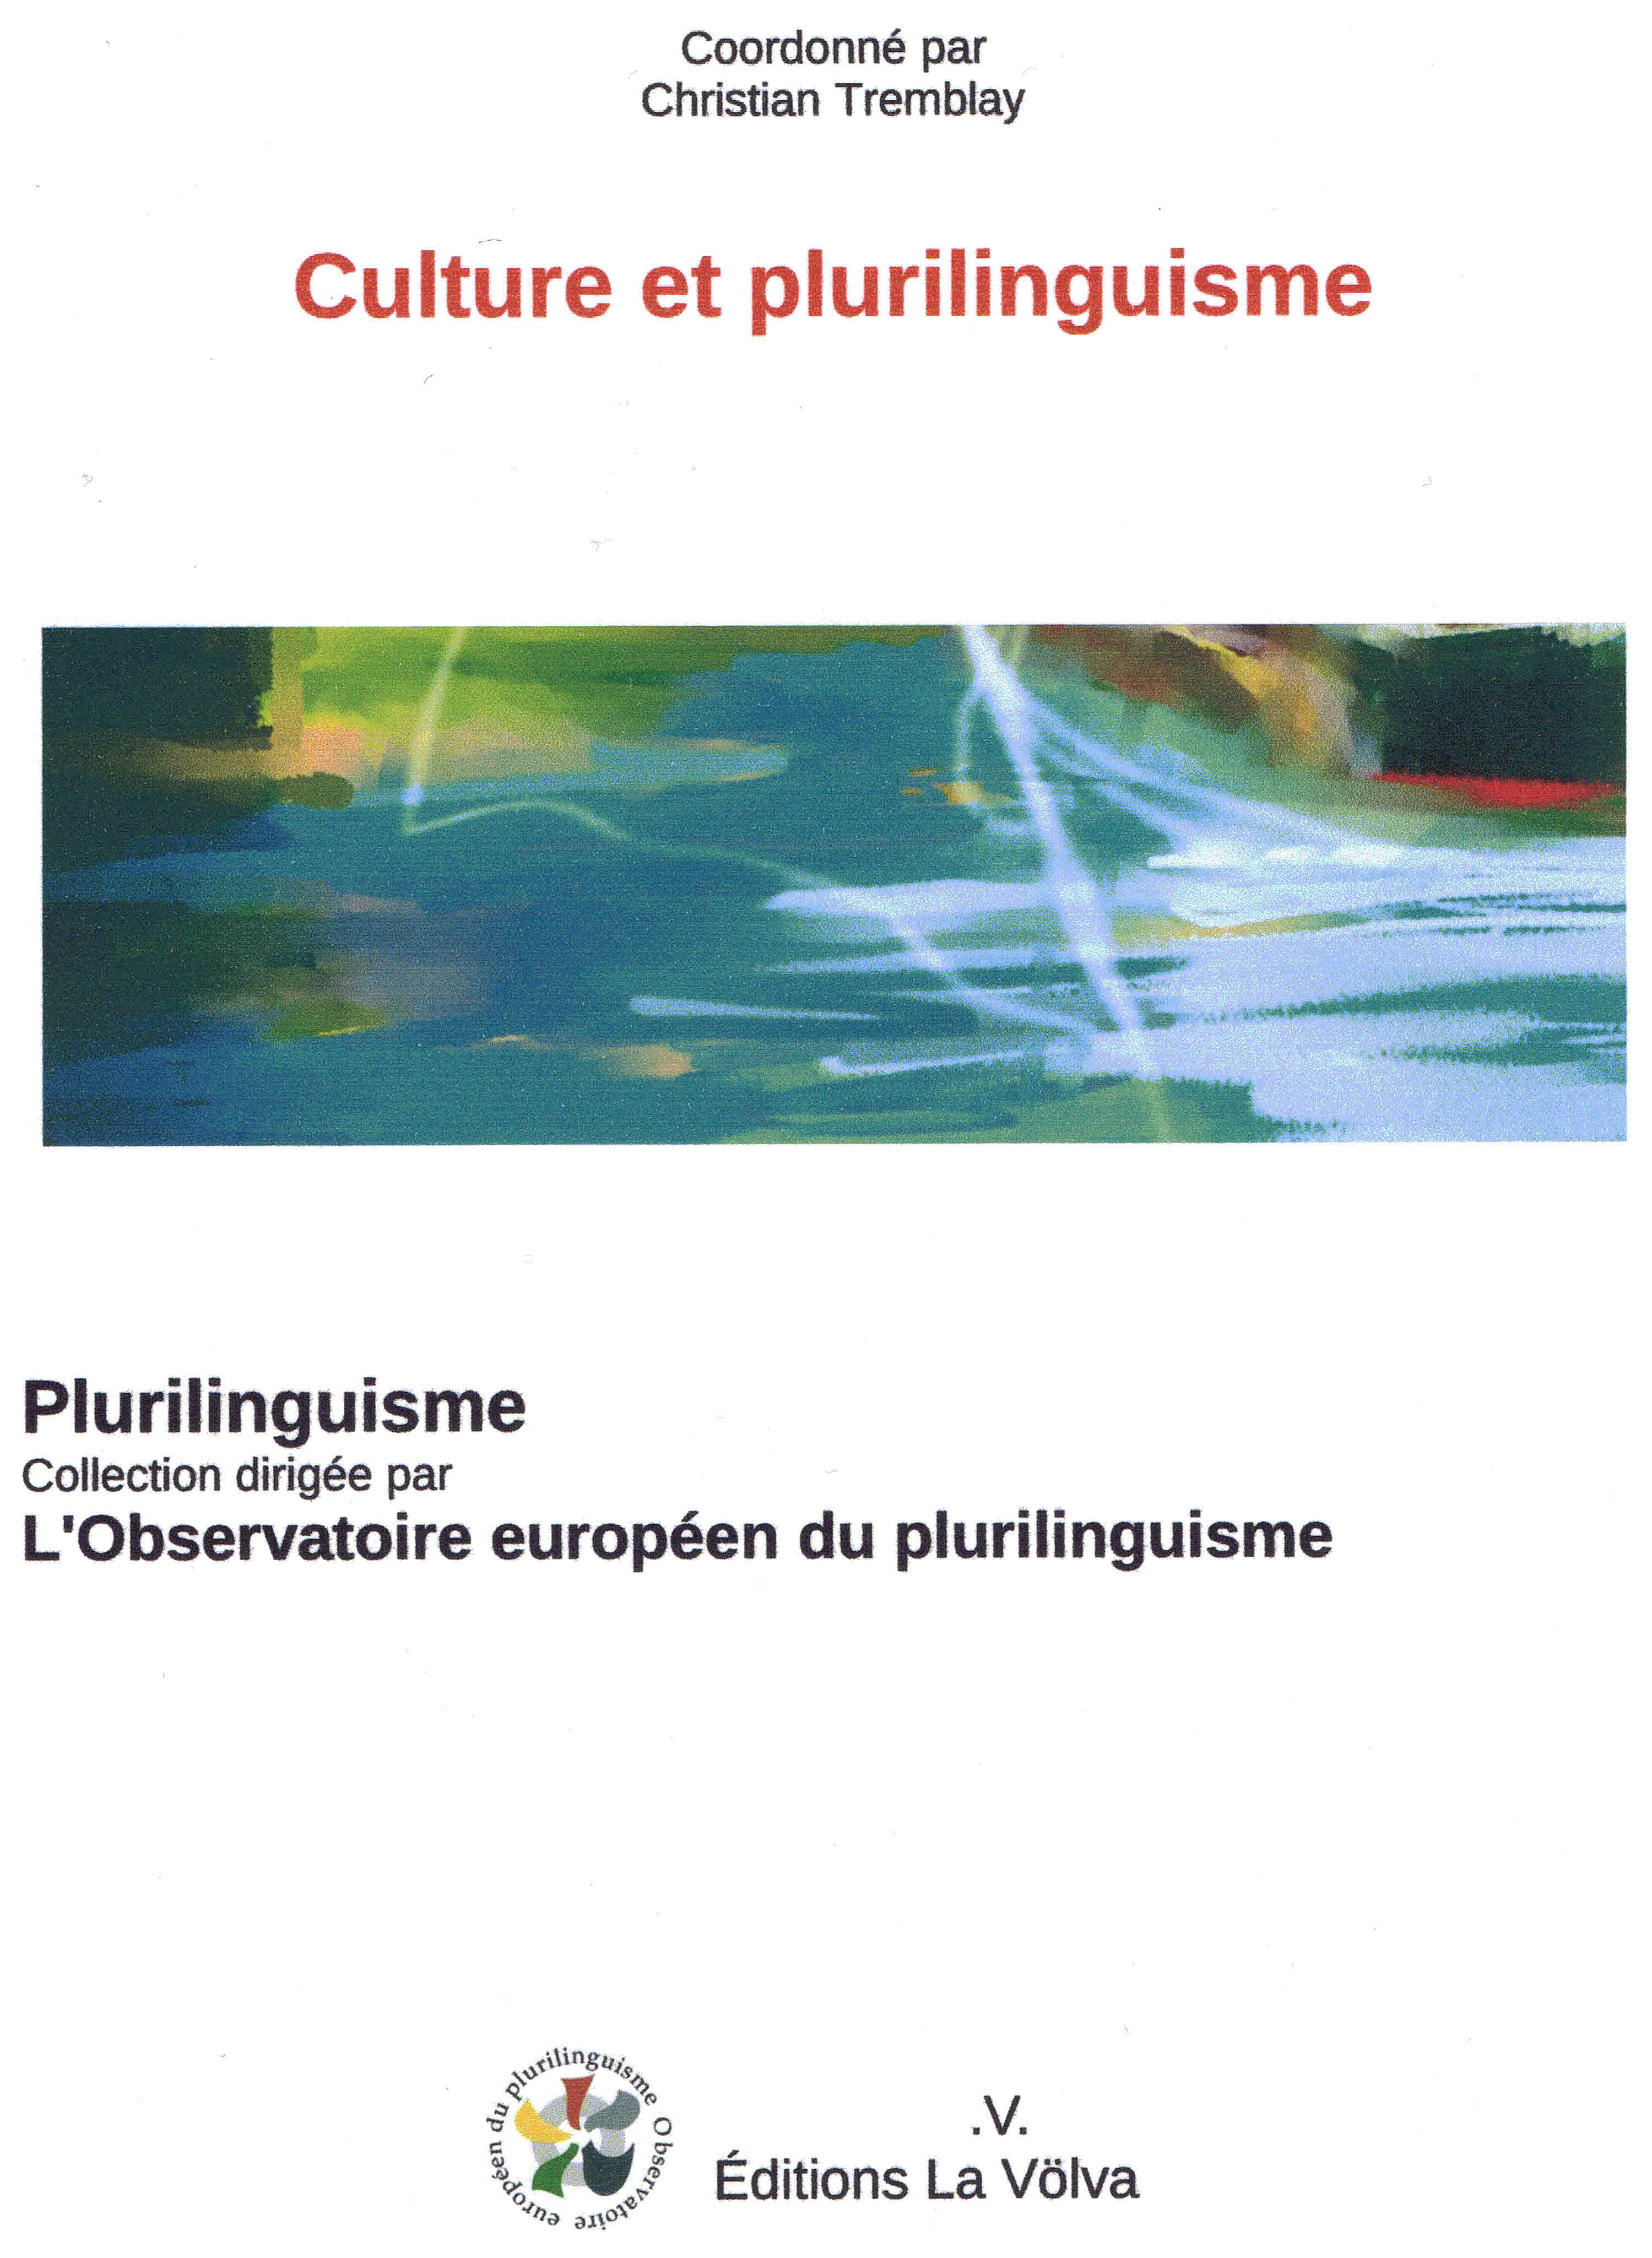 Culture et plurilinguisme livre de l'Observatoire européen du plurilinguisme par Christian Tremblay